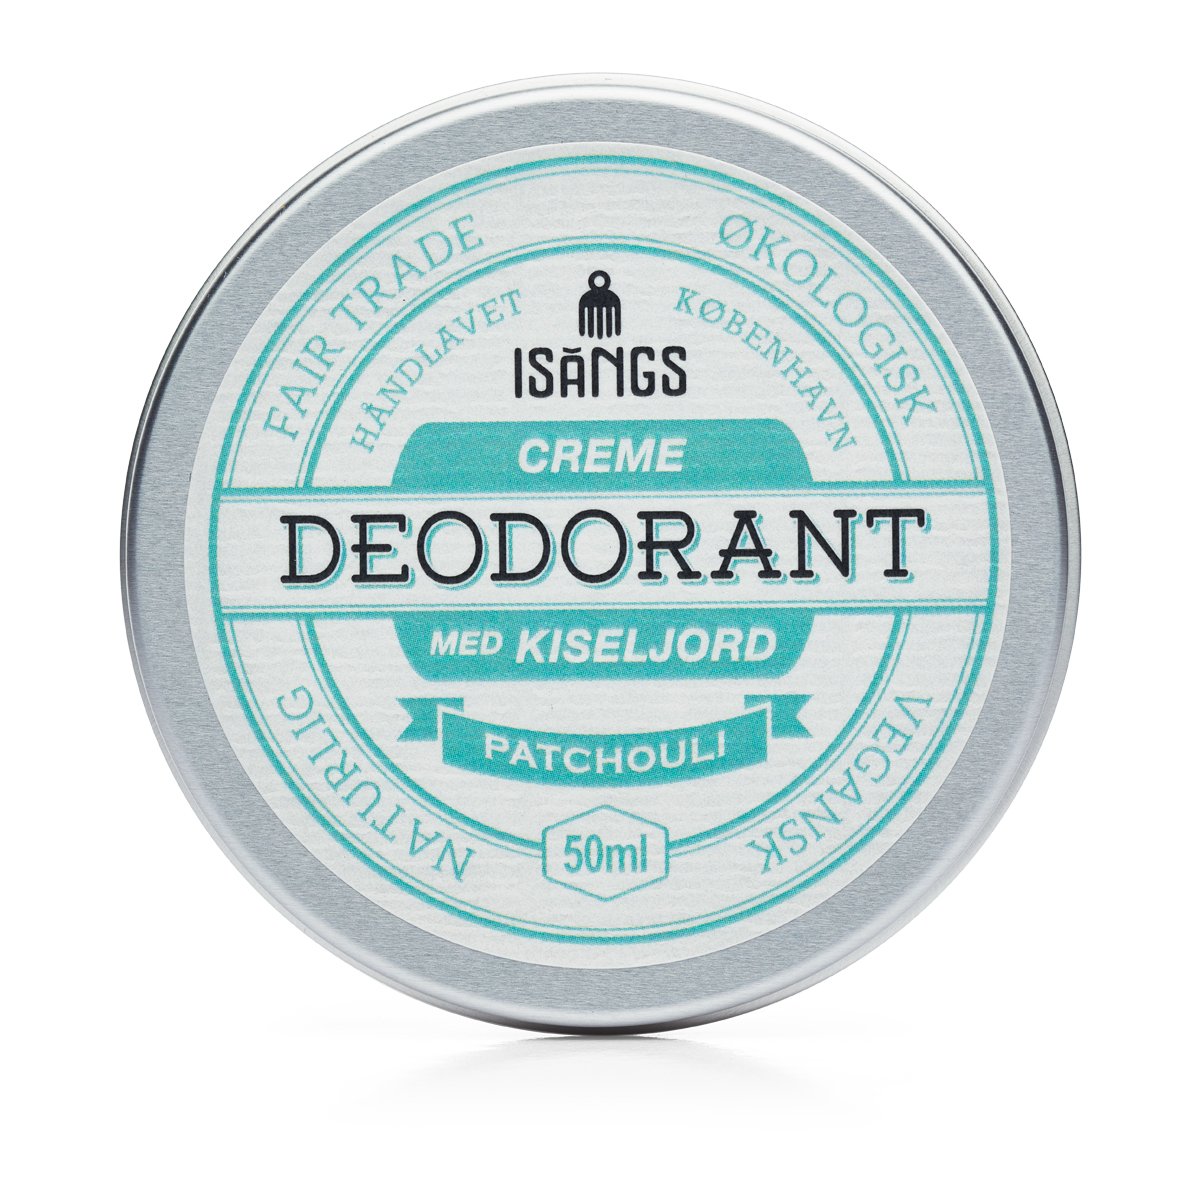 Creme Deodorant med Kiseljord PATCHOULI